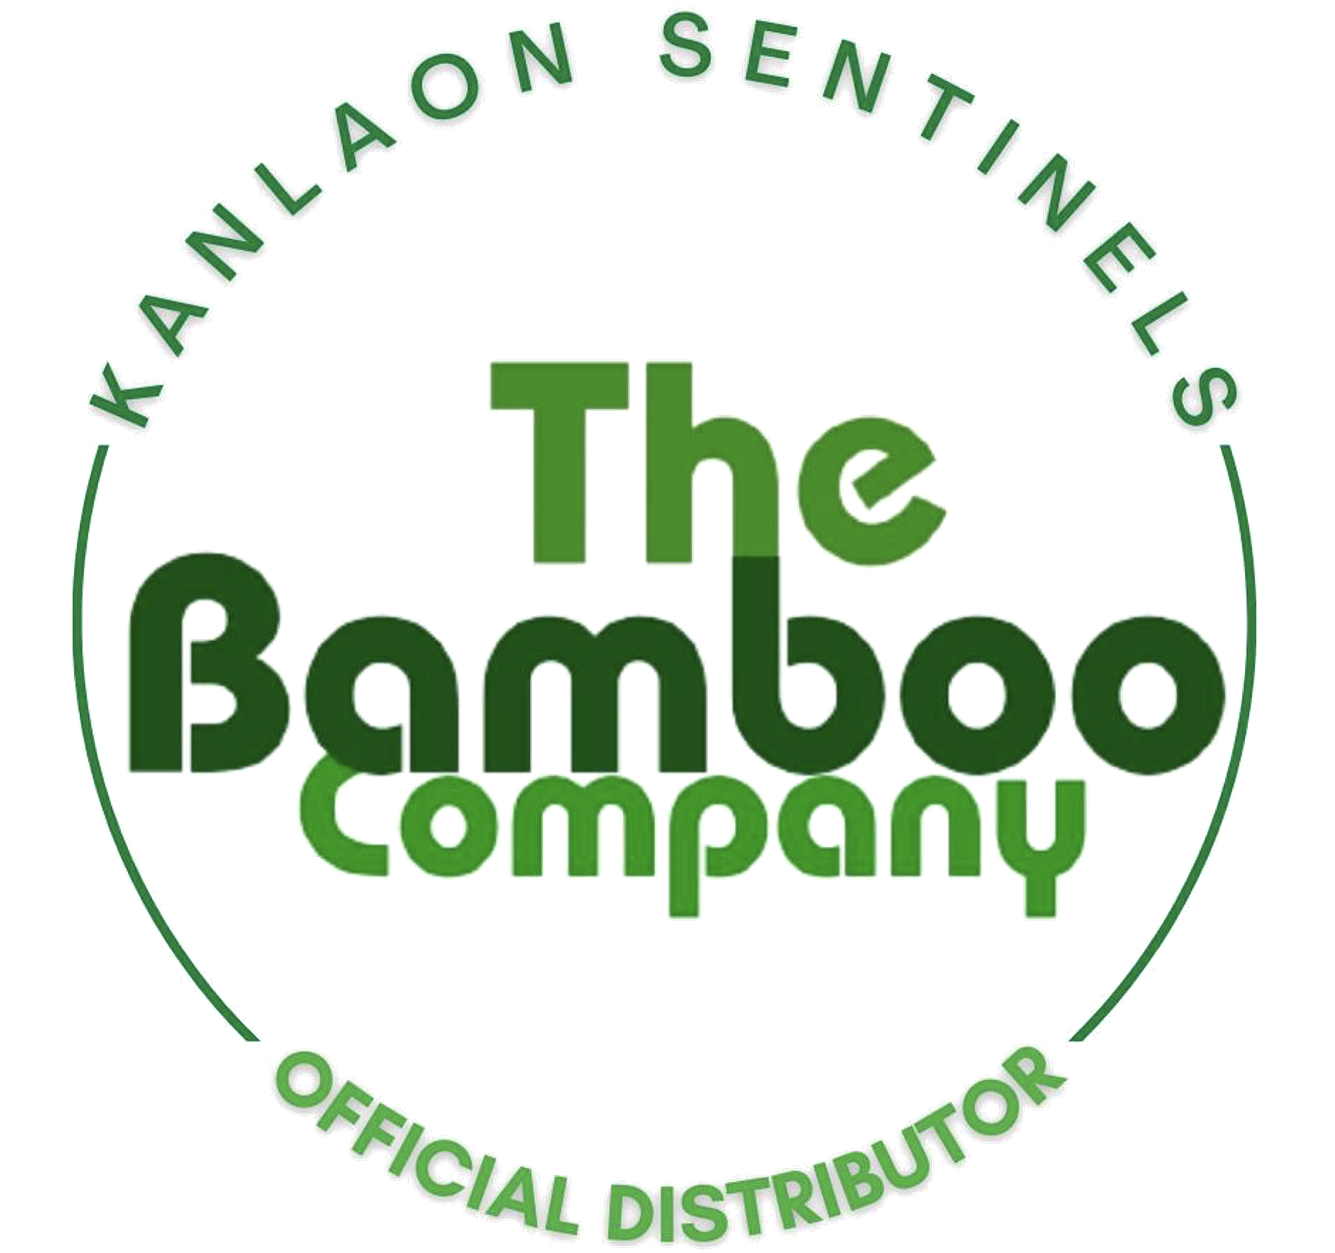 The Bamboo Company